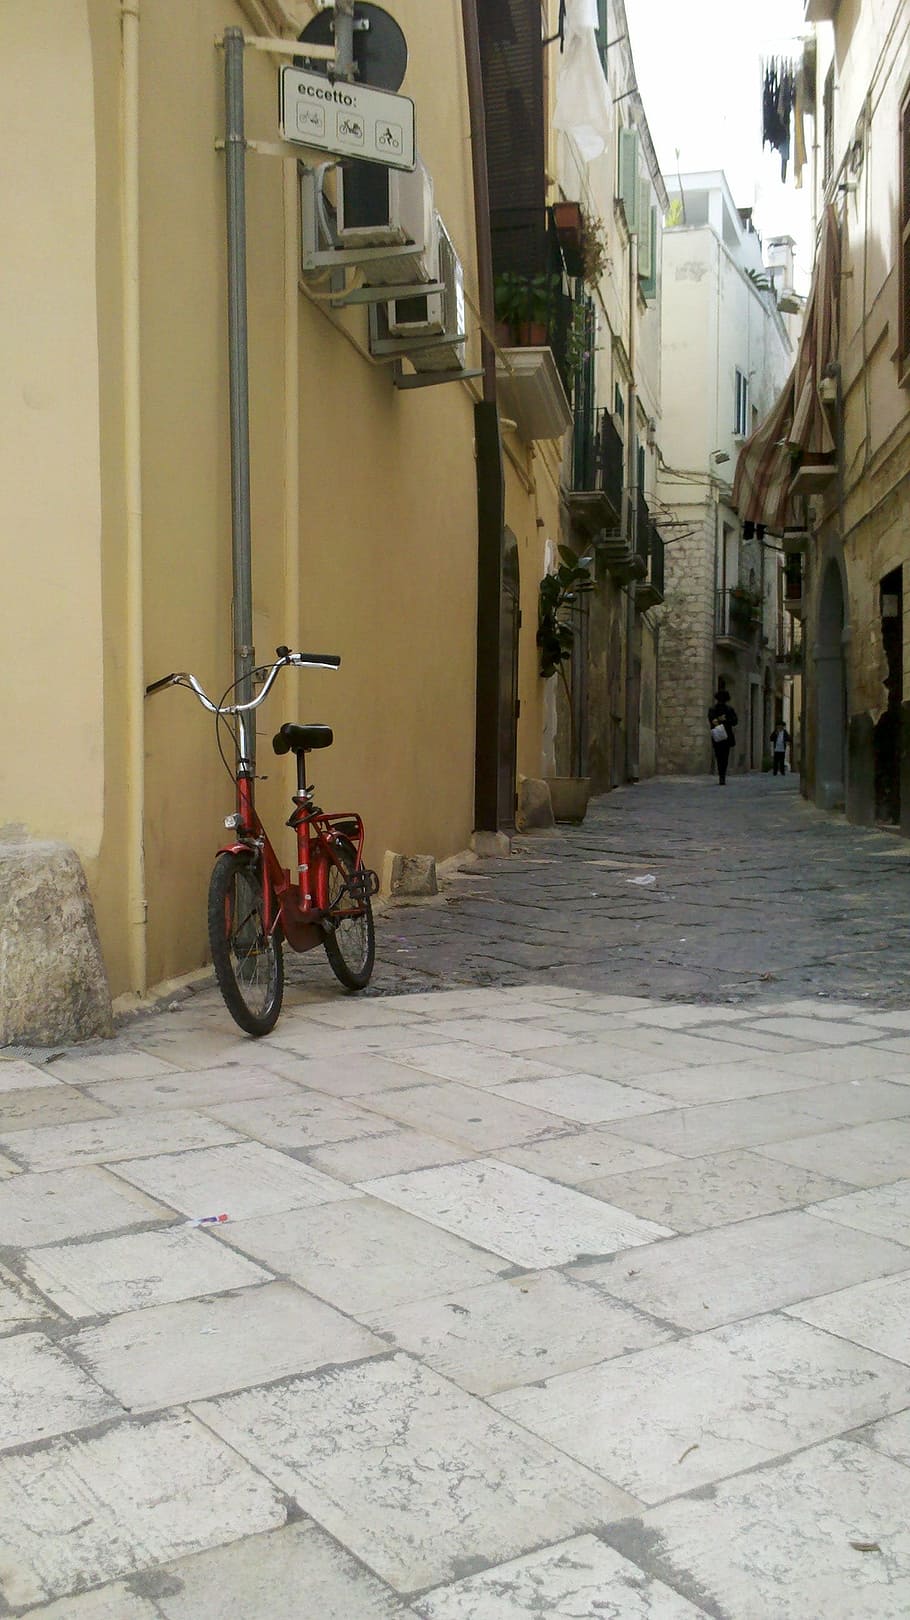 Bicicleta, Beco, Itália, Bari, rua, Cena urbana, Europa, Velho, Cidade, Arquitetura